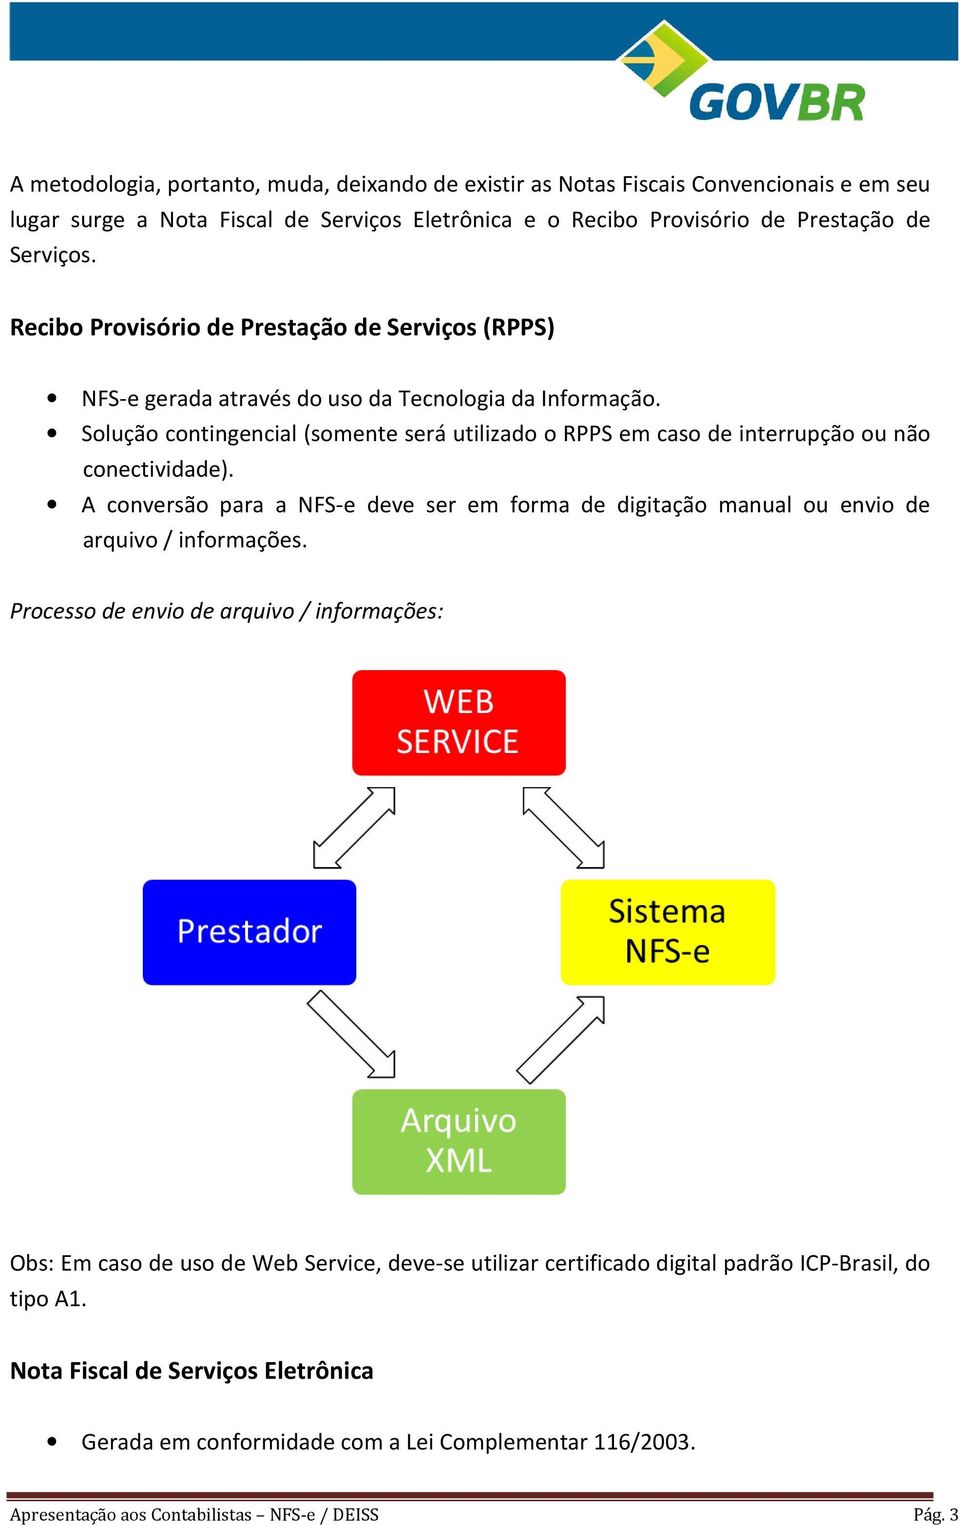 Solução contingencial (somente será utilizado o RPPS em caso de interrupção ou não conectividade). A conversão para a NFS-e deve ser em forma de digitação manual ou envio de arquivo / informações.